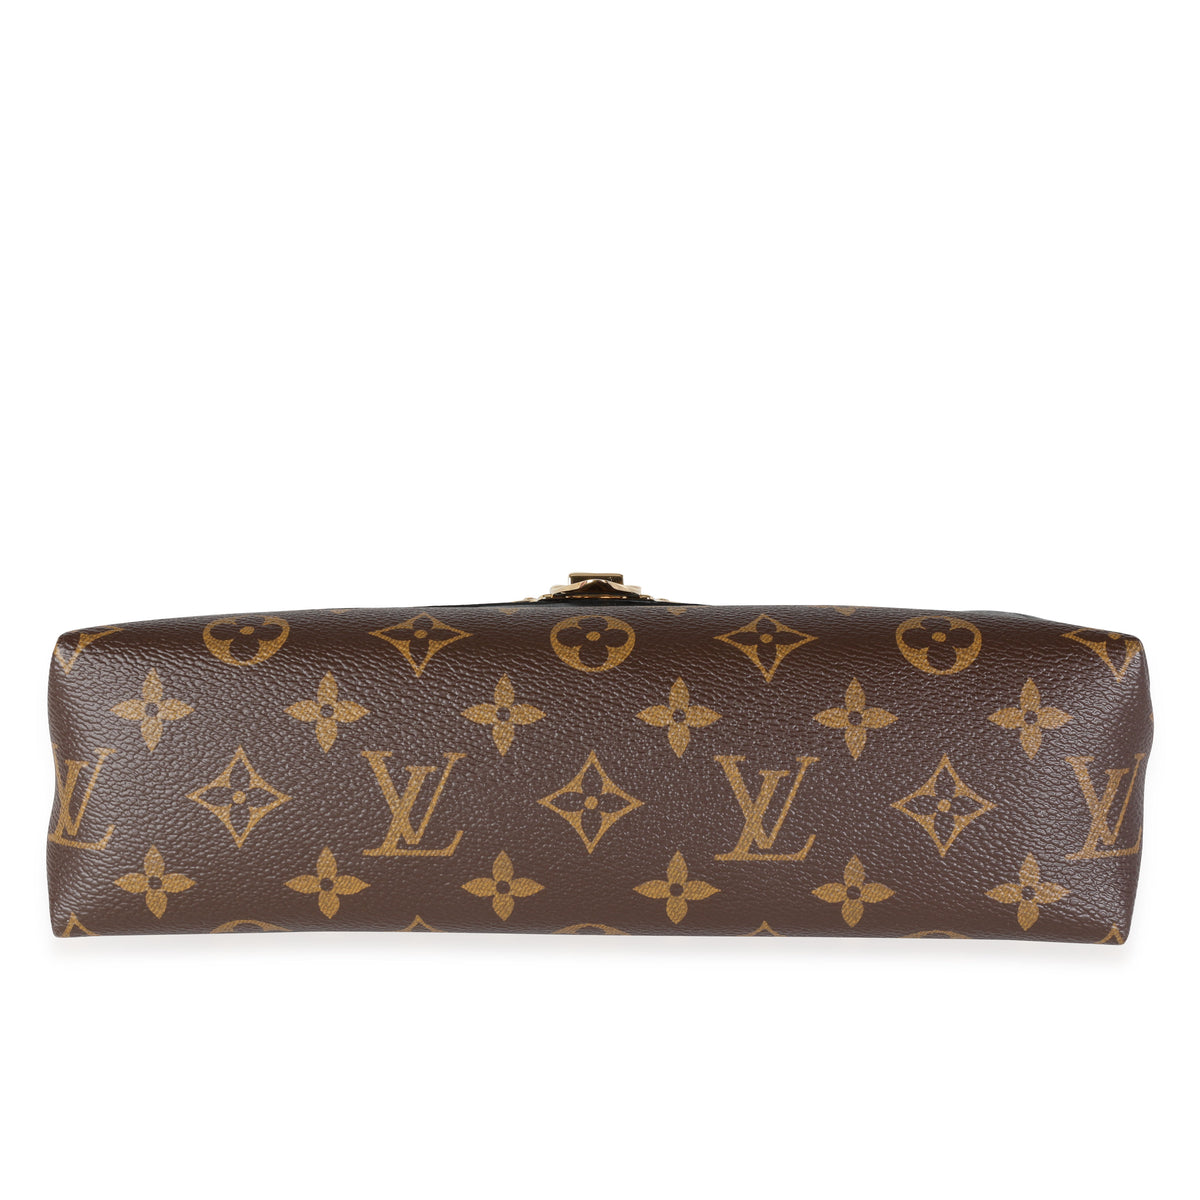 Auth New Louis Vuitton Saint Placide Handbag Monogram Canvas and